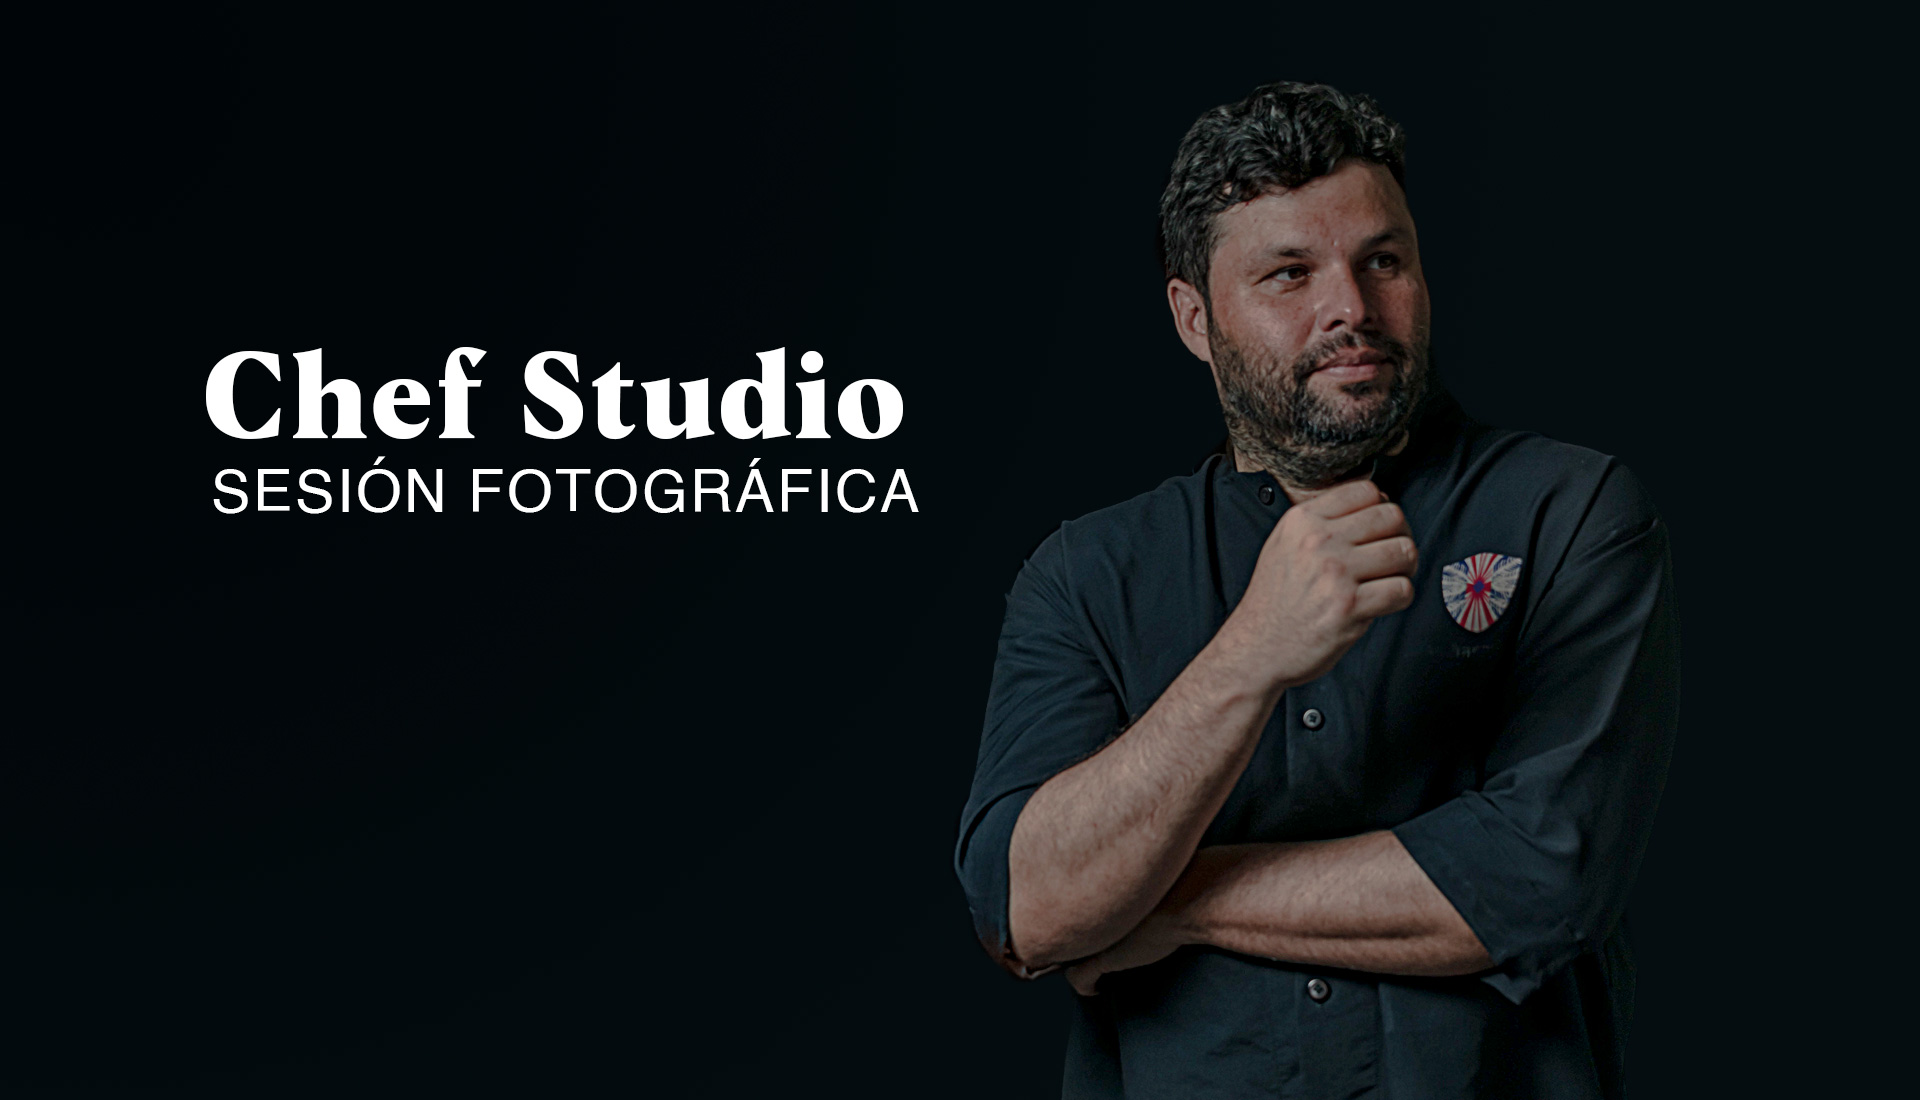 Chef-Studio-Sesión-Fotográfica CHEF-STUDIO-SESION-FOTOGRAFICA Fotografia realizada por Schalph Studios para nuestro cliente Paella tierra mar, con su Chef Jose Barreneche